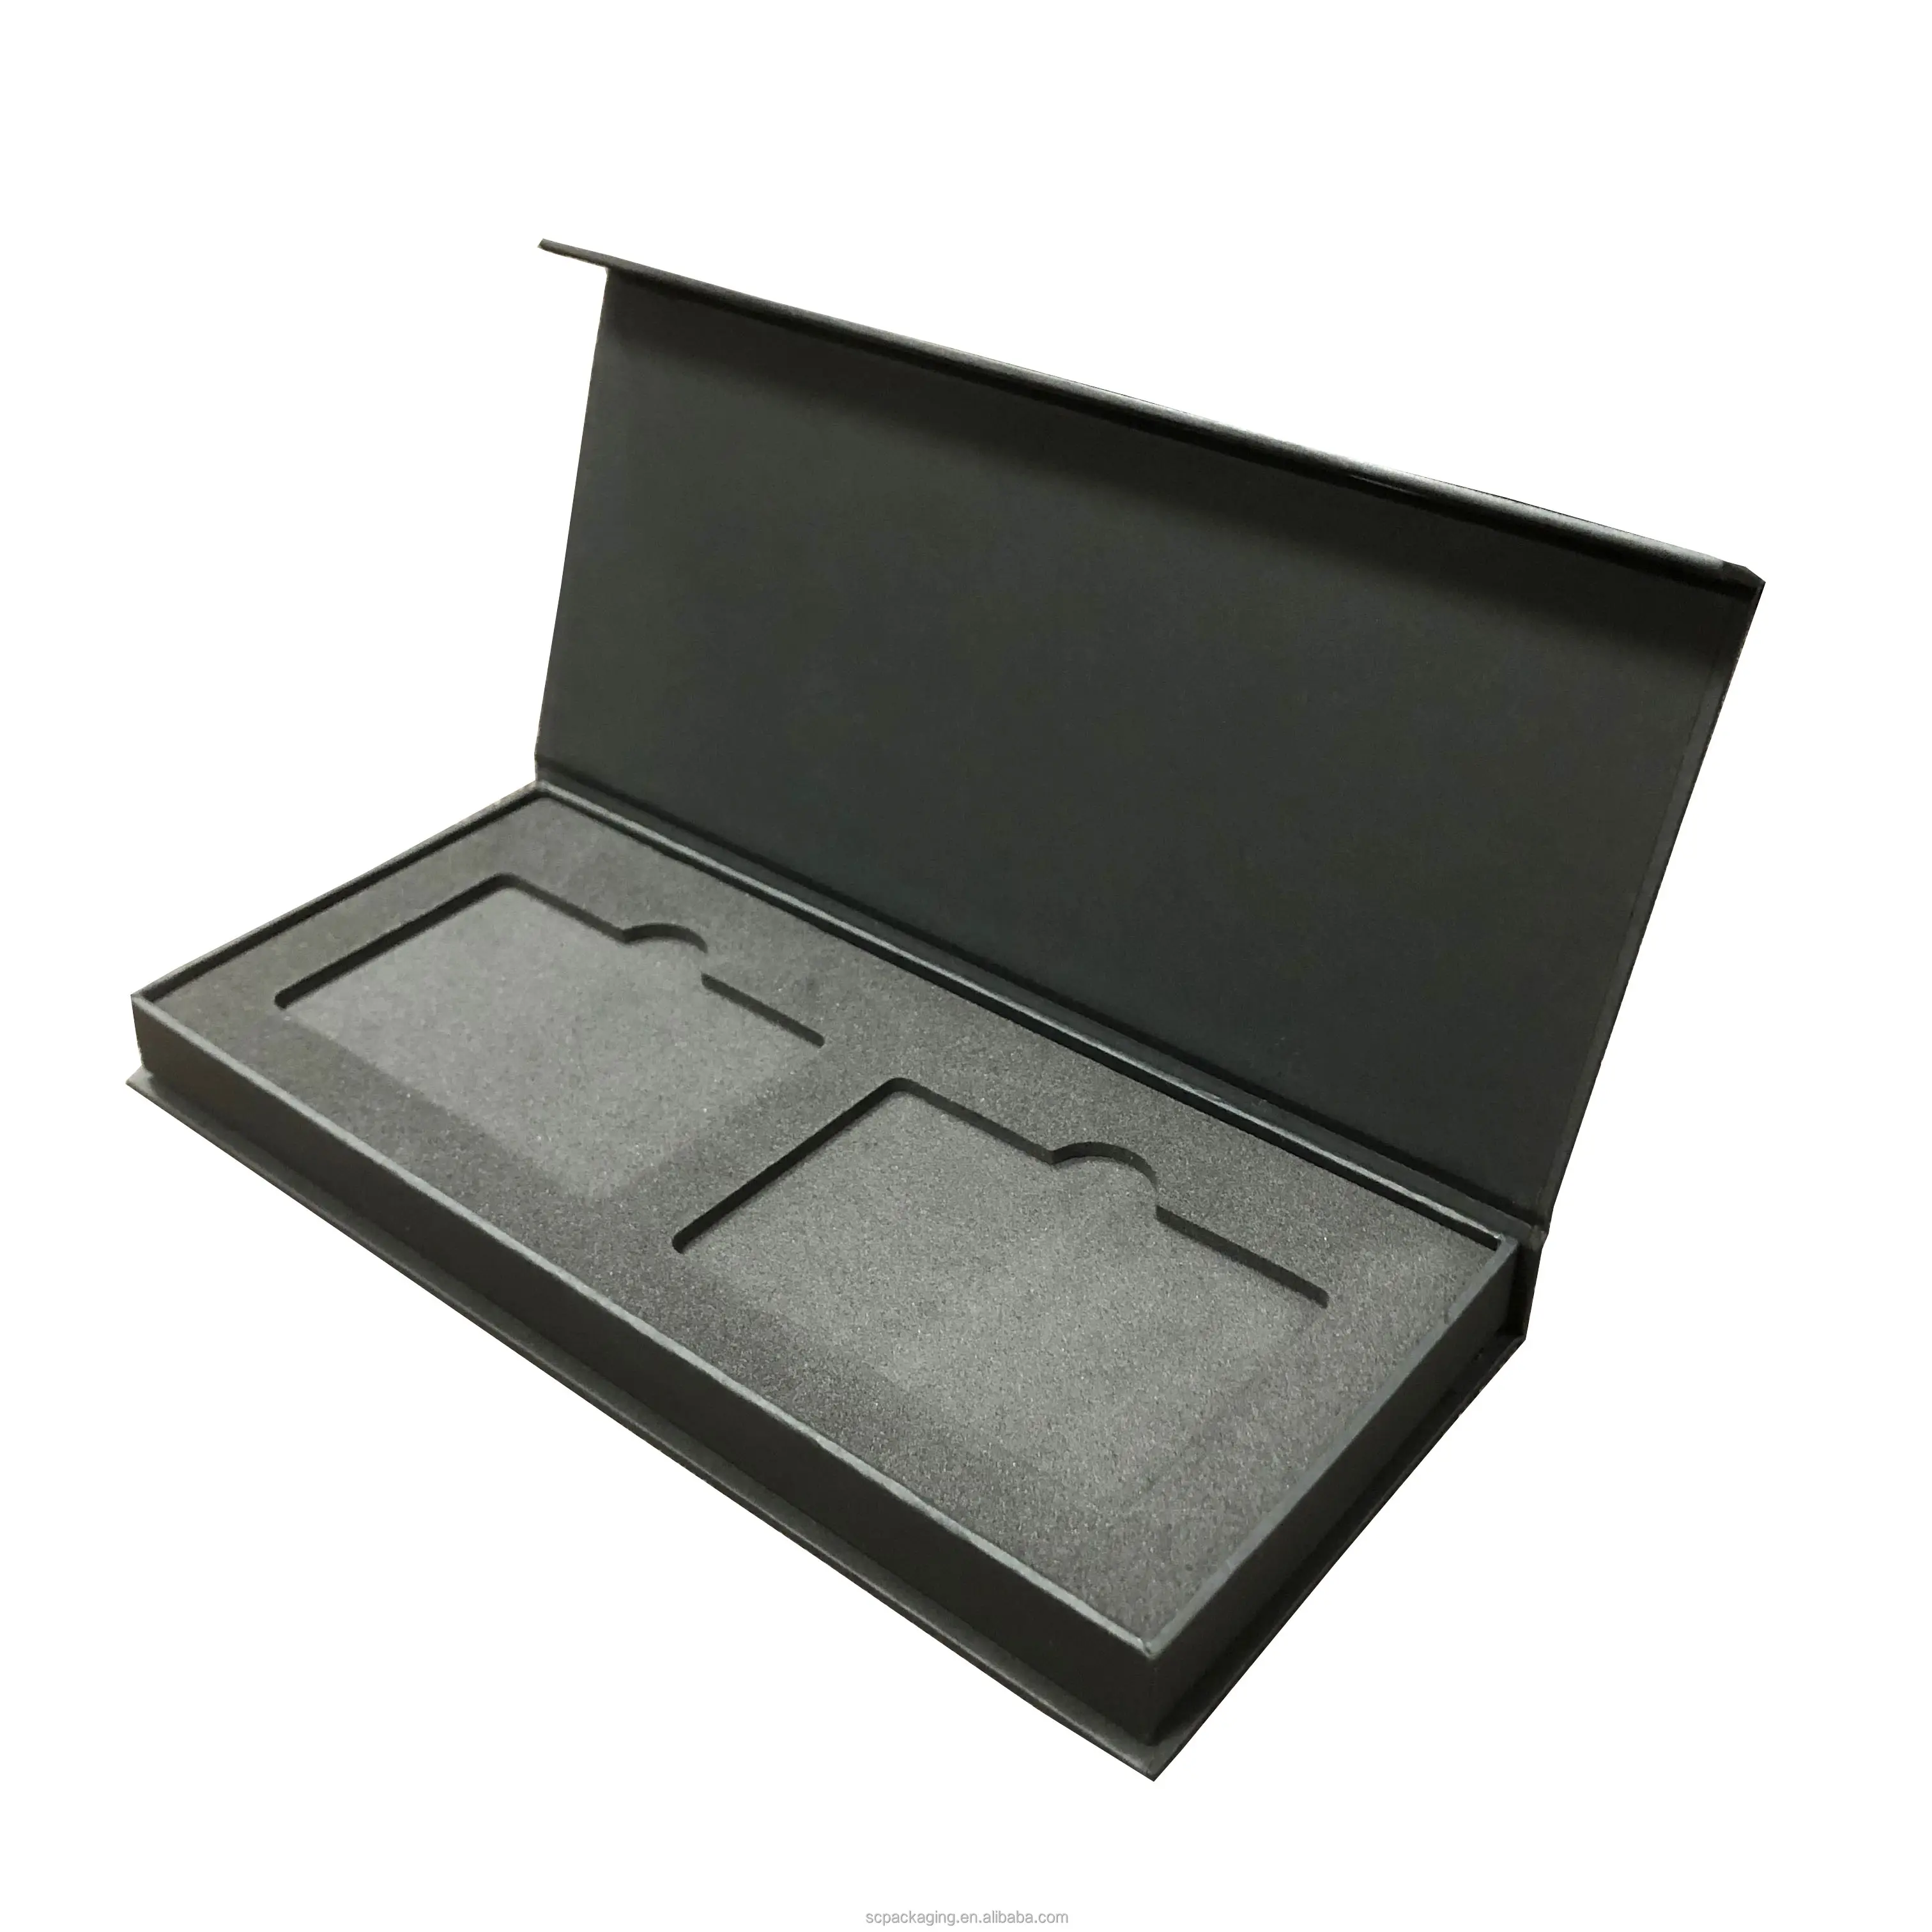 無料サンプルブランドロゴカスタム紙包装ボックス2スロット金属クレジットカードクレジットカードギフトボックス